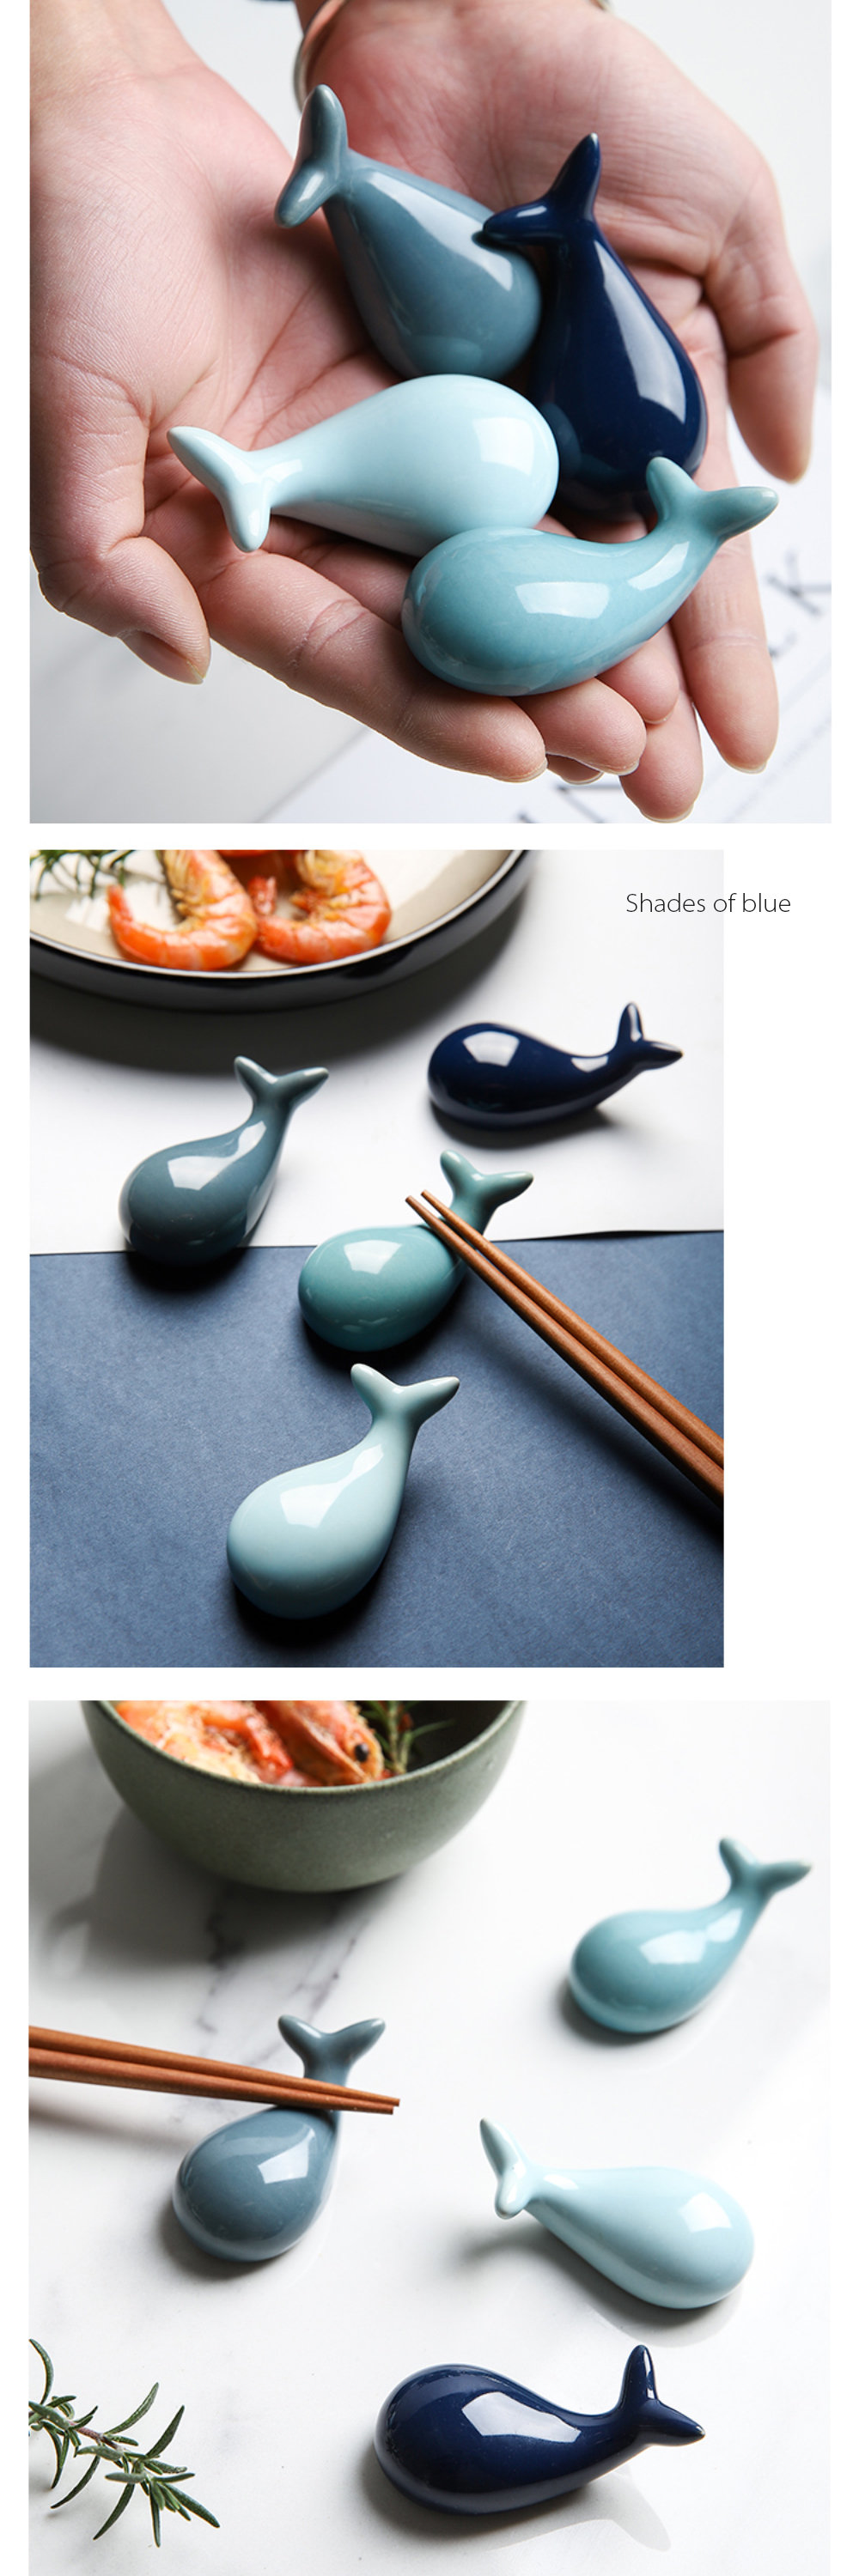 Details about   4Pcs Whale Shape Chopstick Holder Rest Simple Glazed Set Nordic Home Decor 